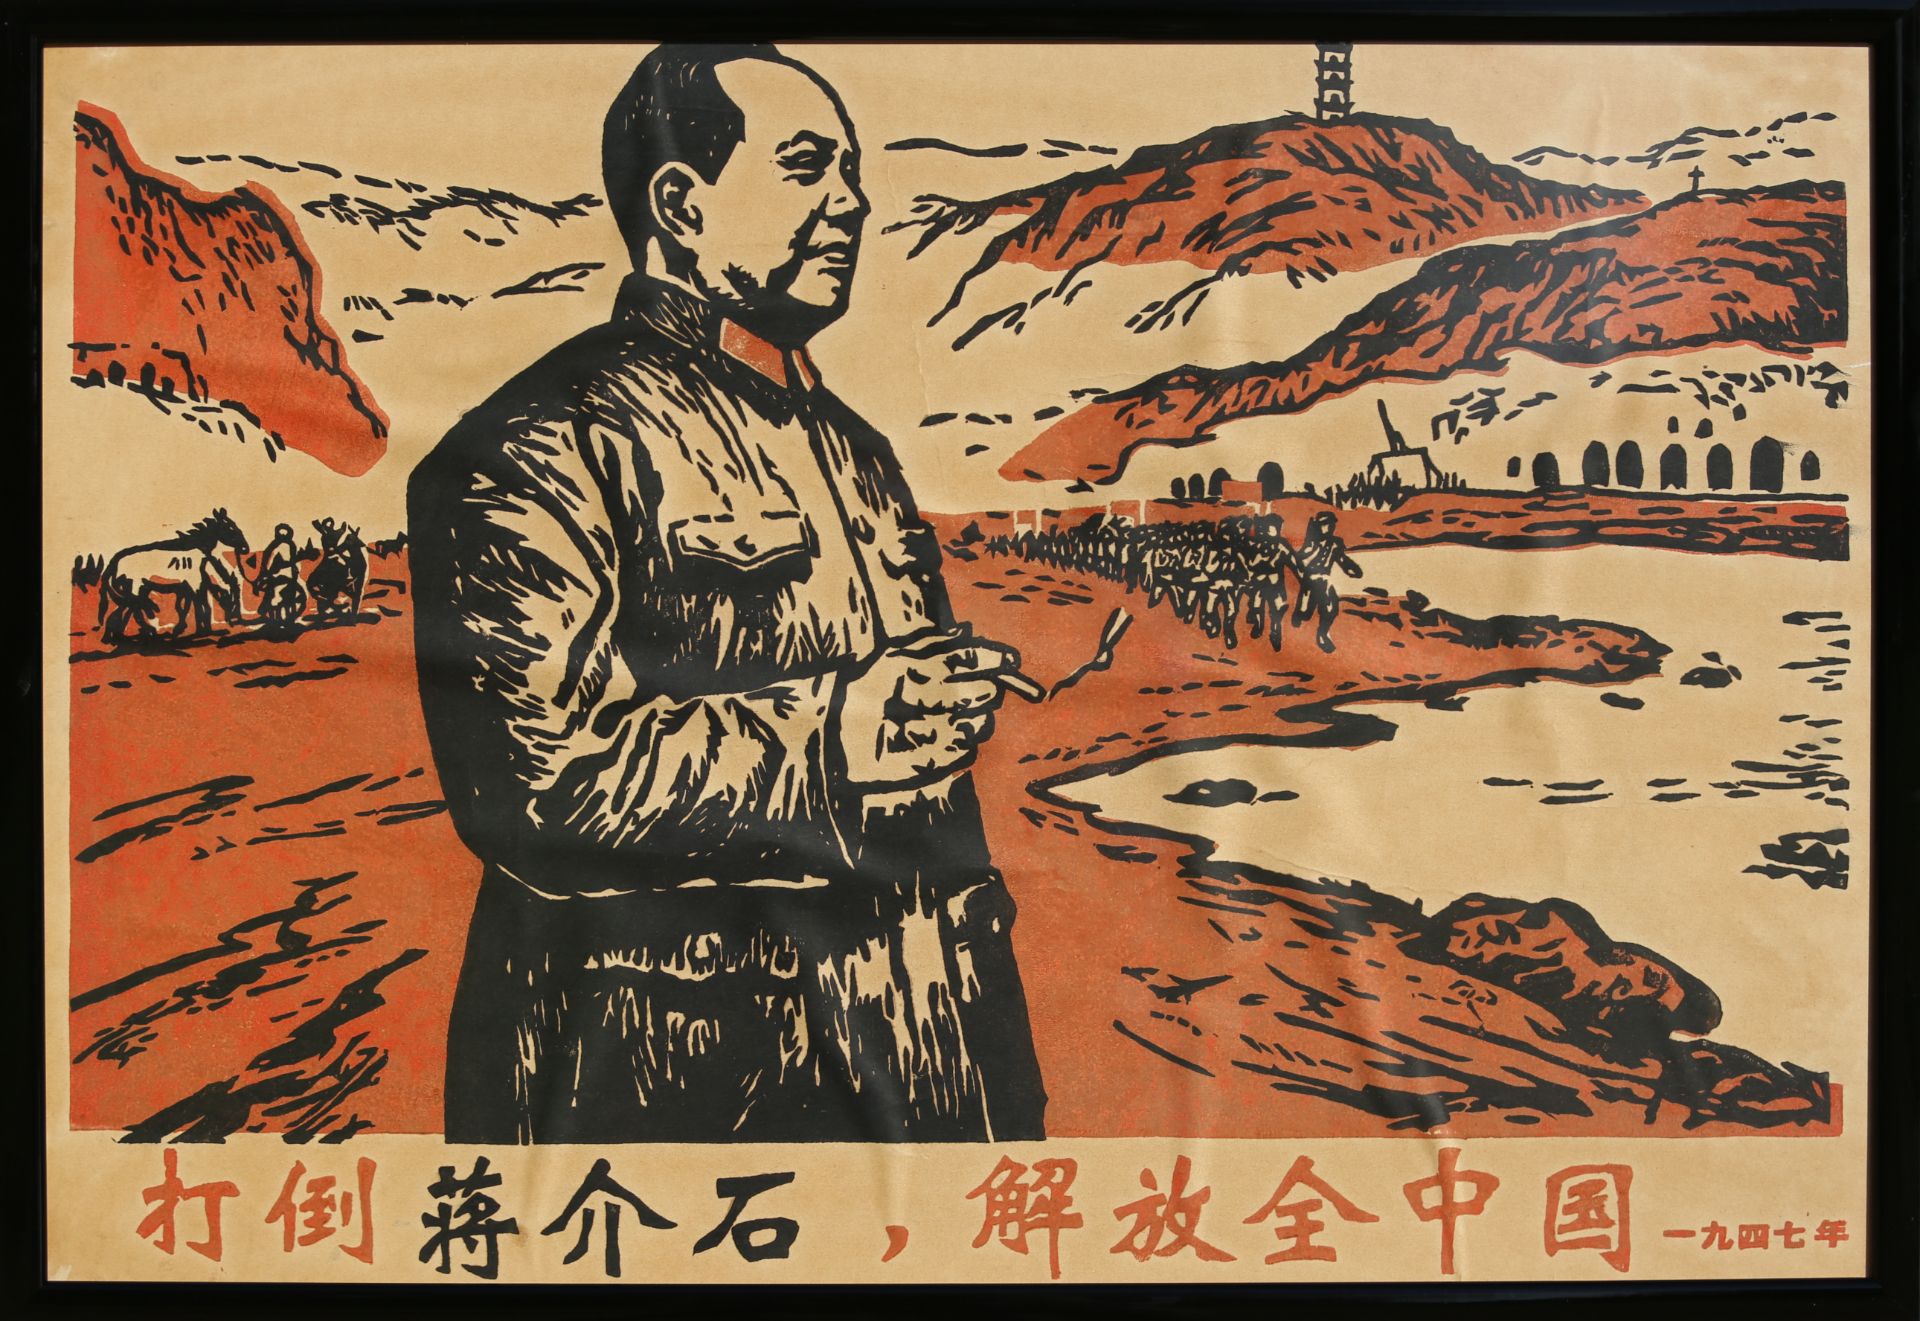 17 Affiches de propagande de la révolution culturelle chinoise Encadrée 75cm x 52cm - Image 3 of 17